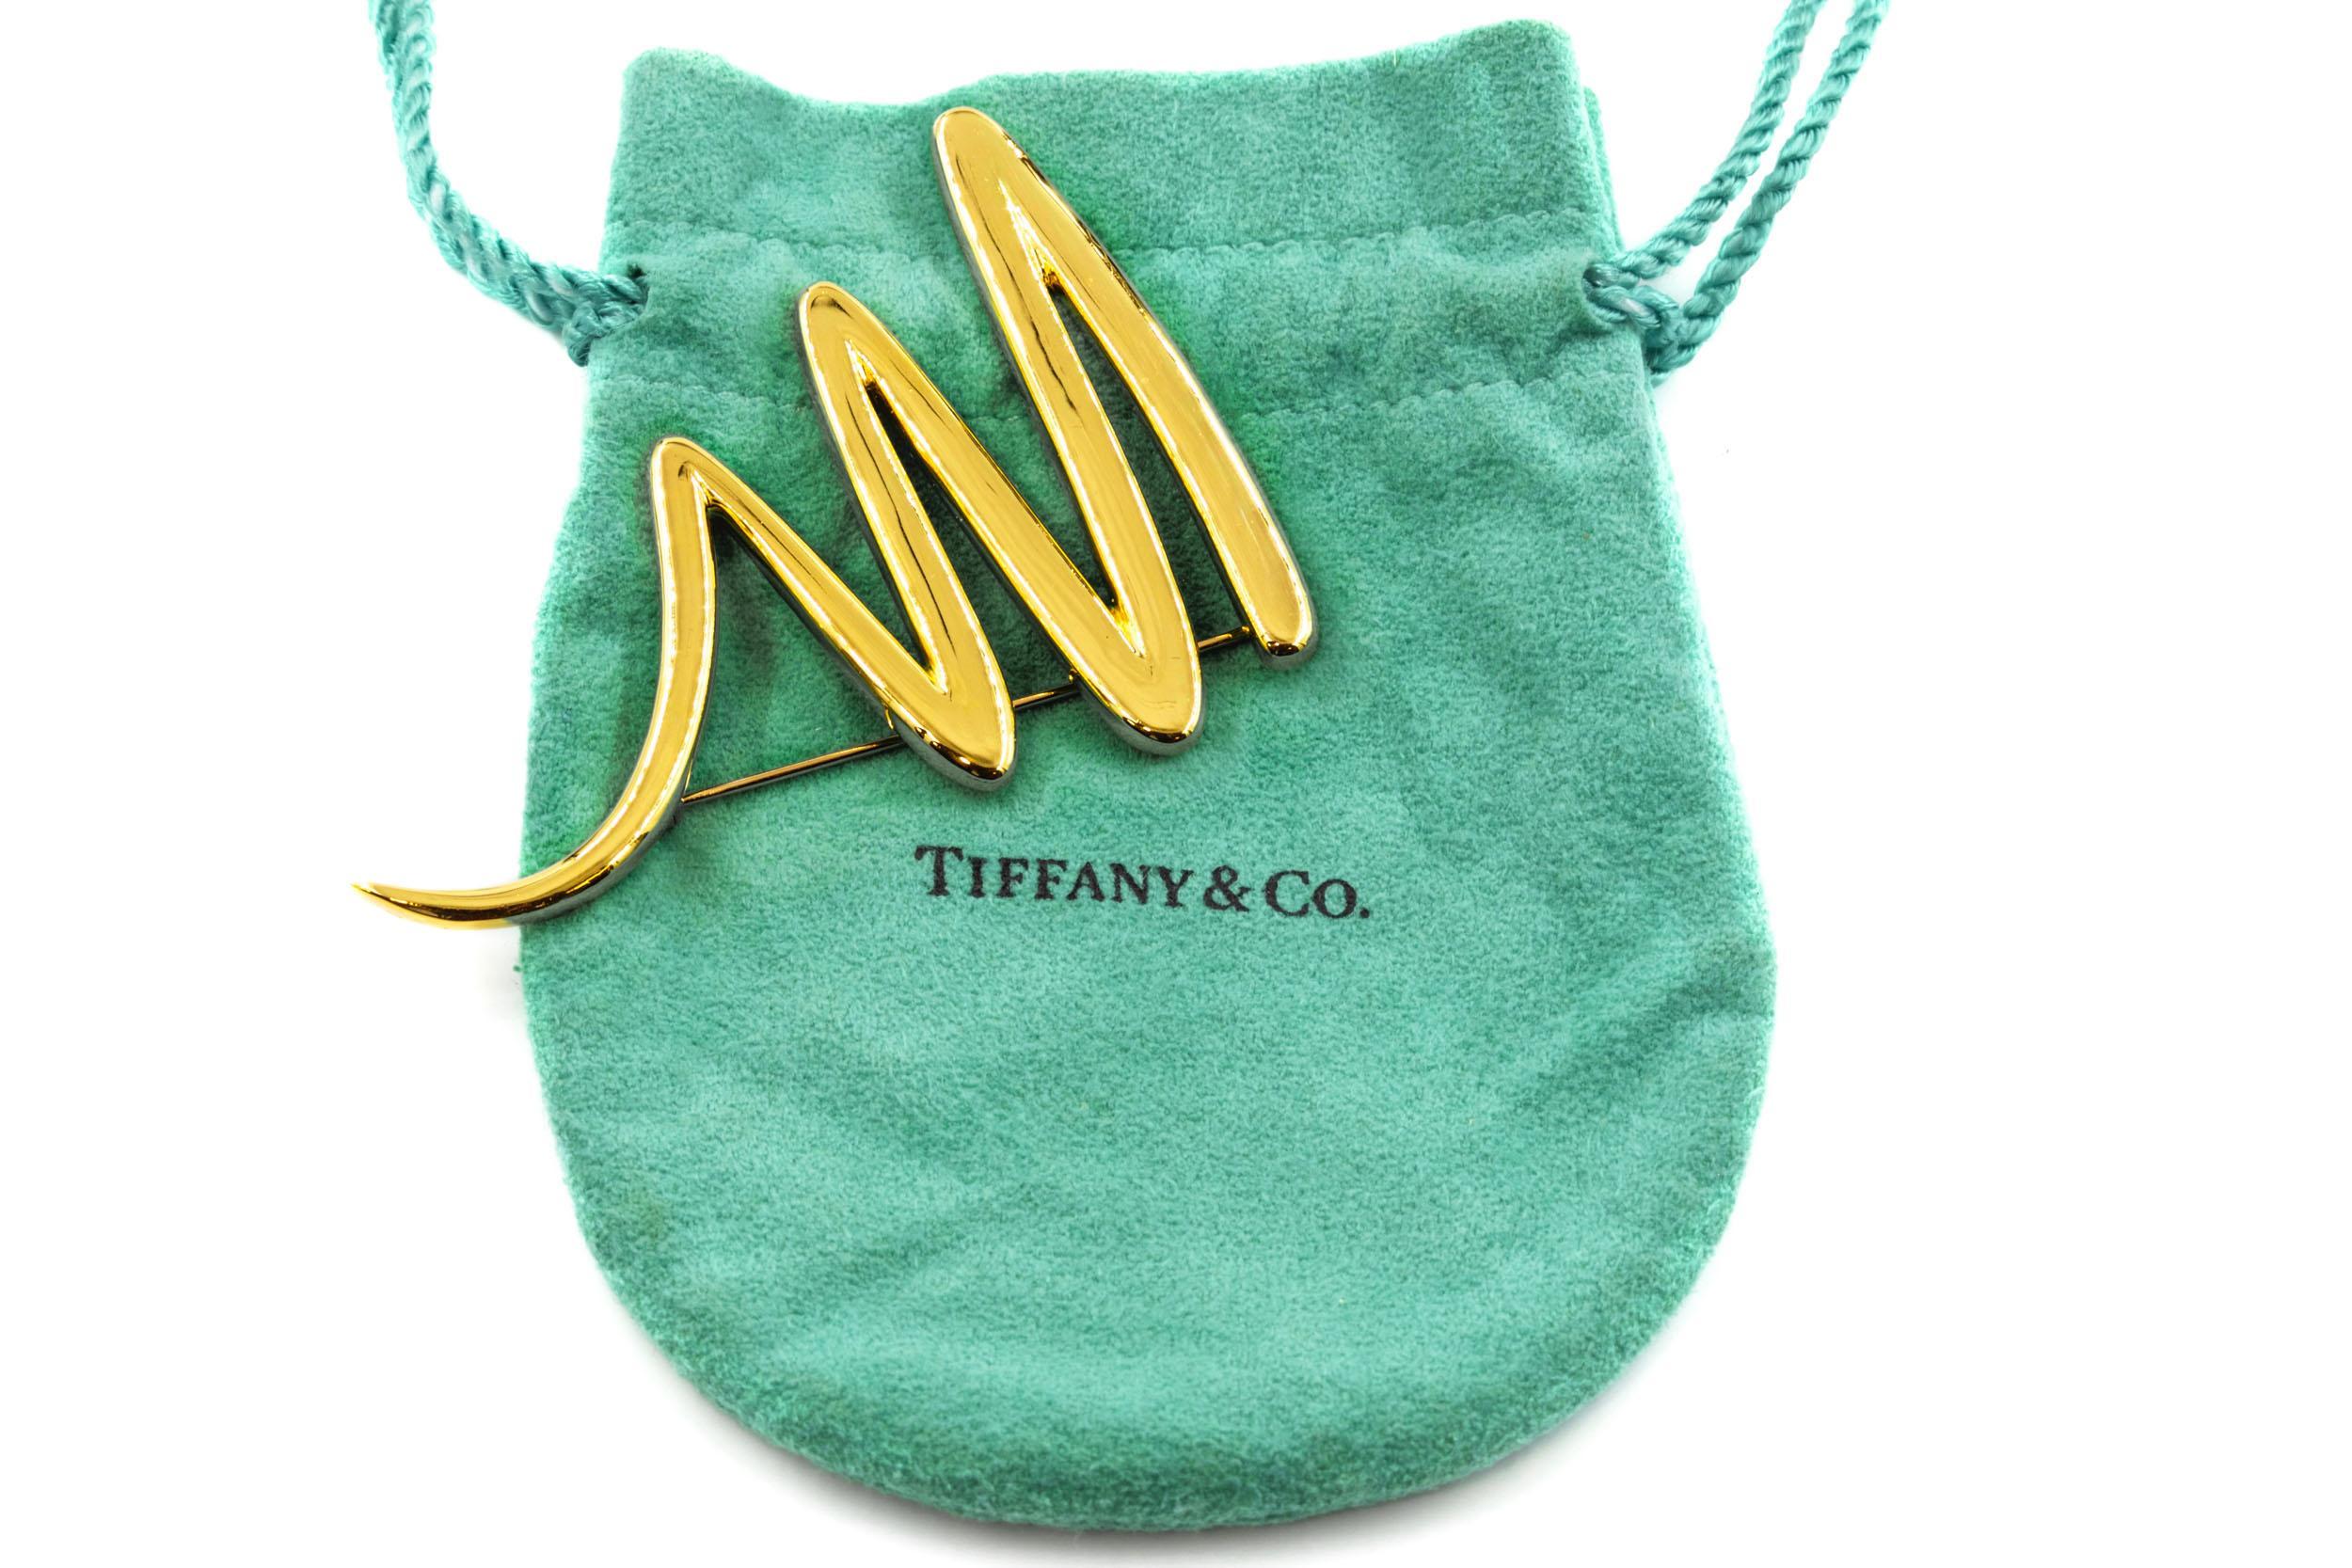 PALOMA PICASSO FOR TIFFANY & CO ÉPINGLE ZIG-ZAG SQUIGGLE
Circa 1983, avec pochette à cordon originale de Tiffany & Co.
Référence 010SIU17A 

L'une des versions les plus substantielles de ce design emblématique de Paloma Picasso pour Tiffany & Co,